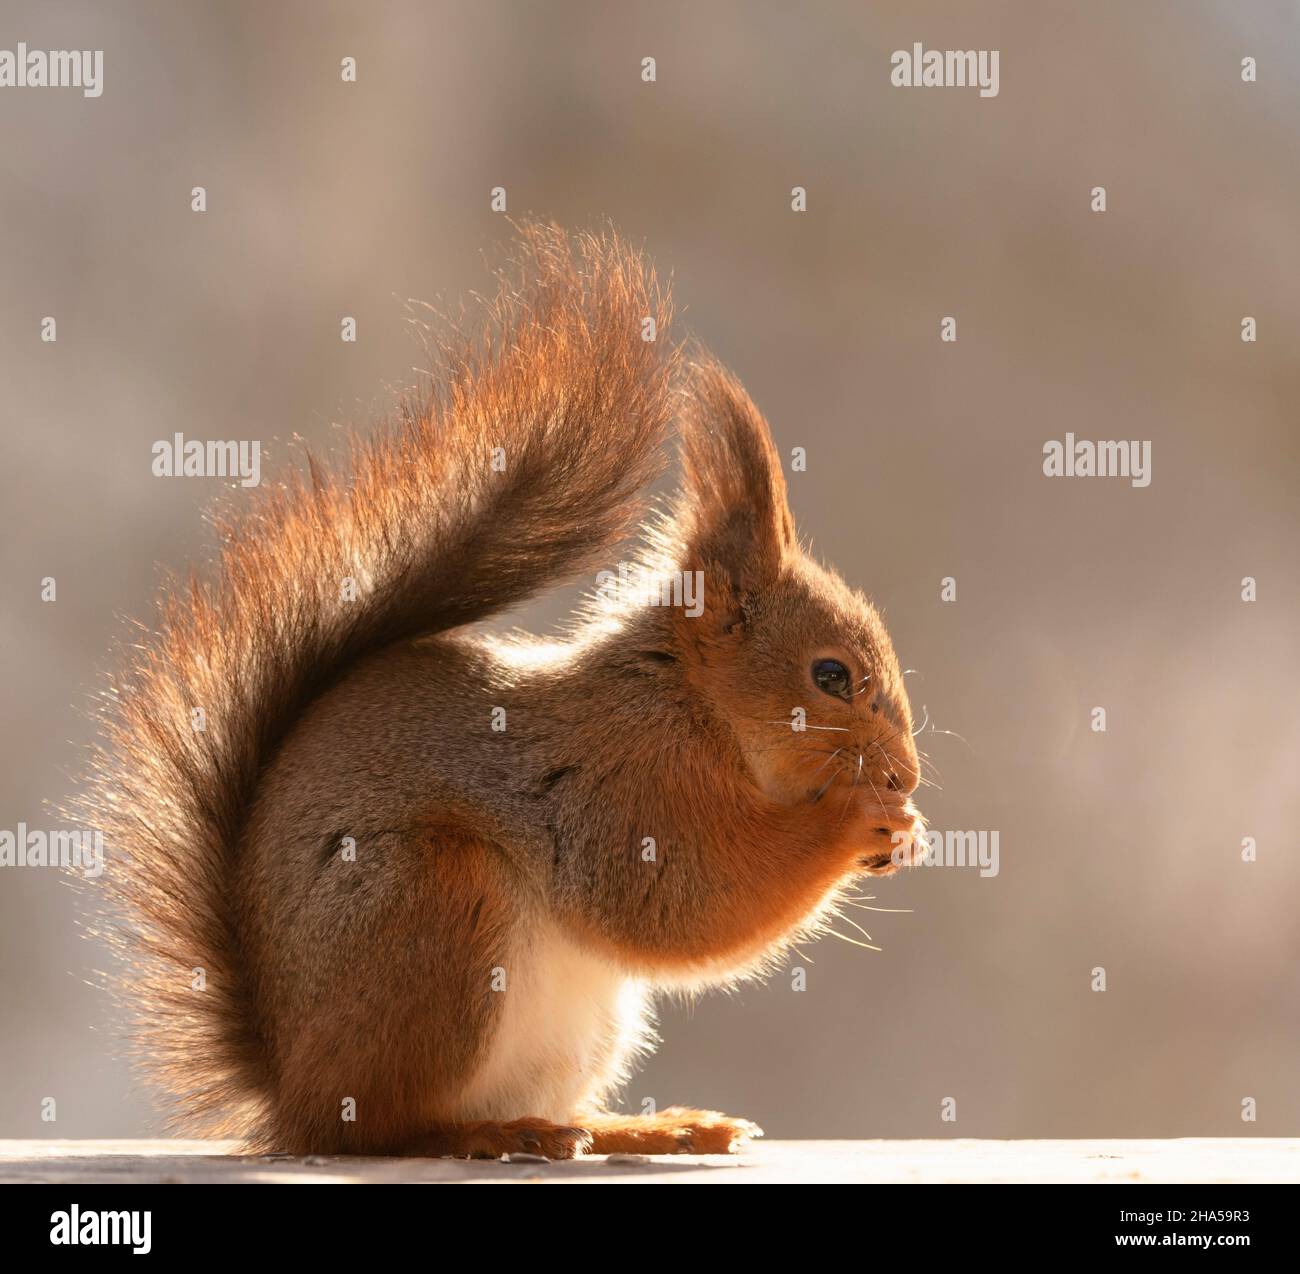 profil d'un écureuil rouge qui regarde le droite Banque D'Images